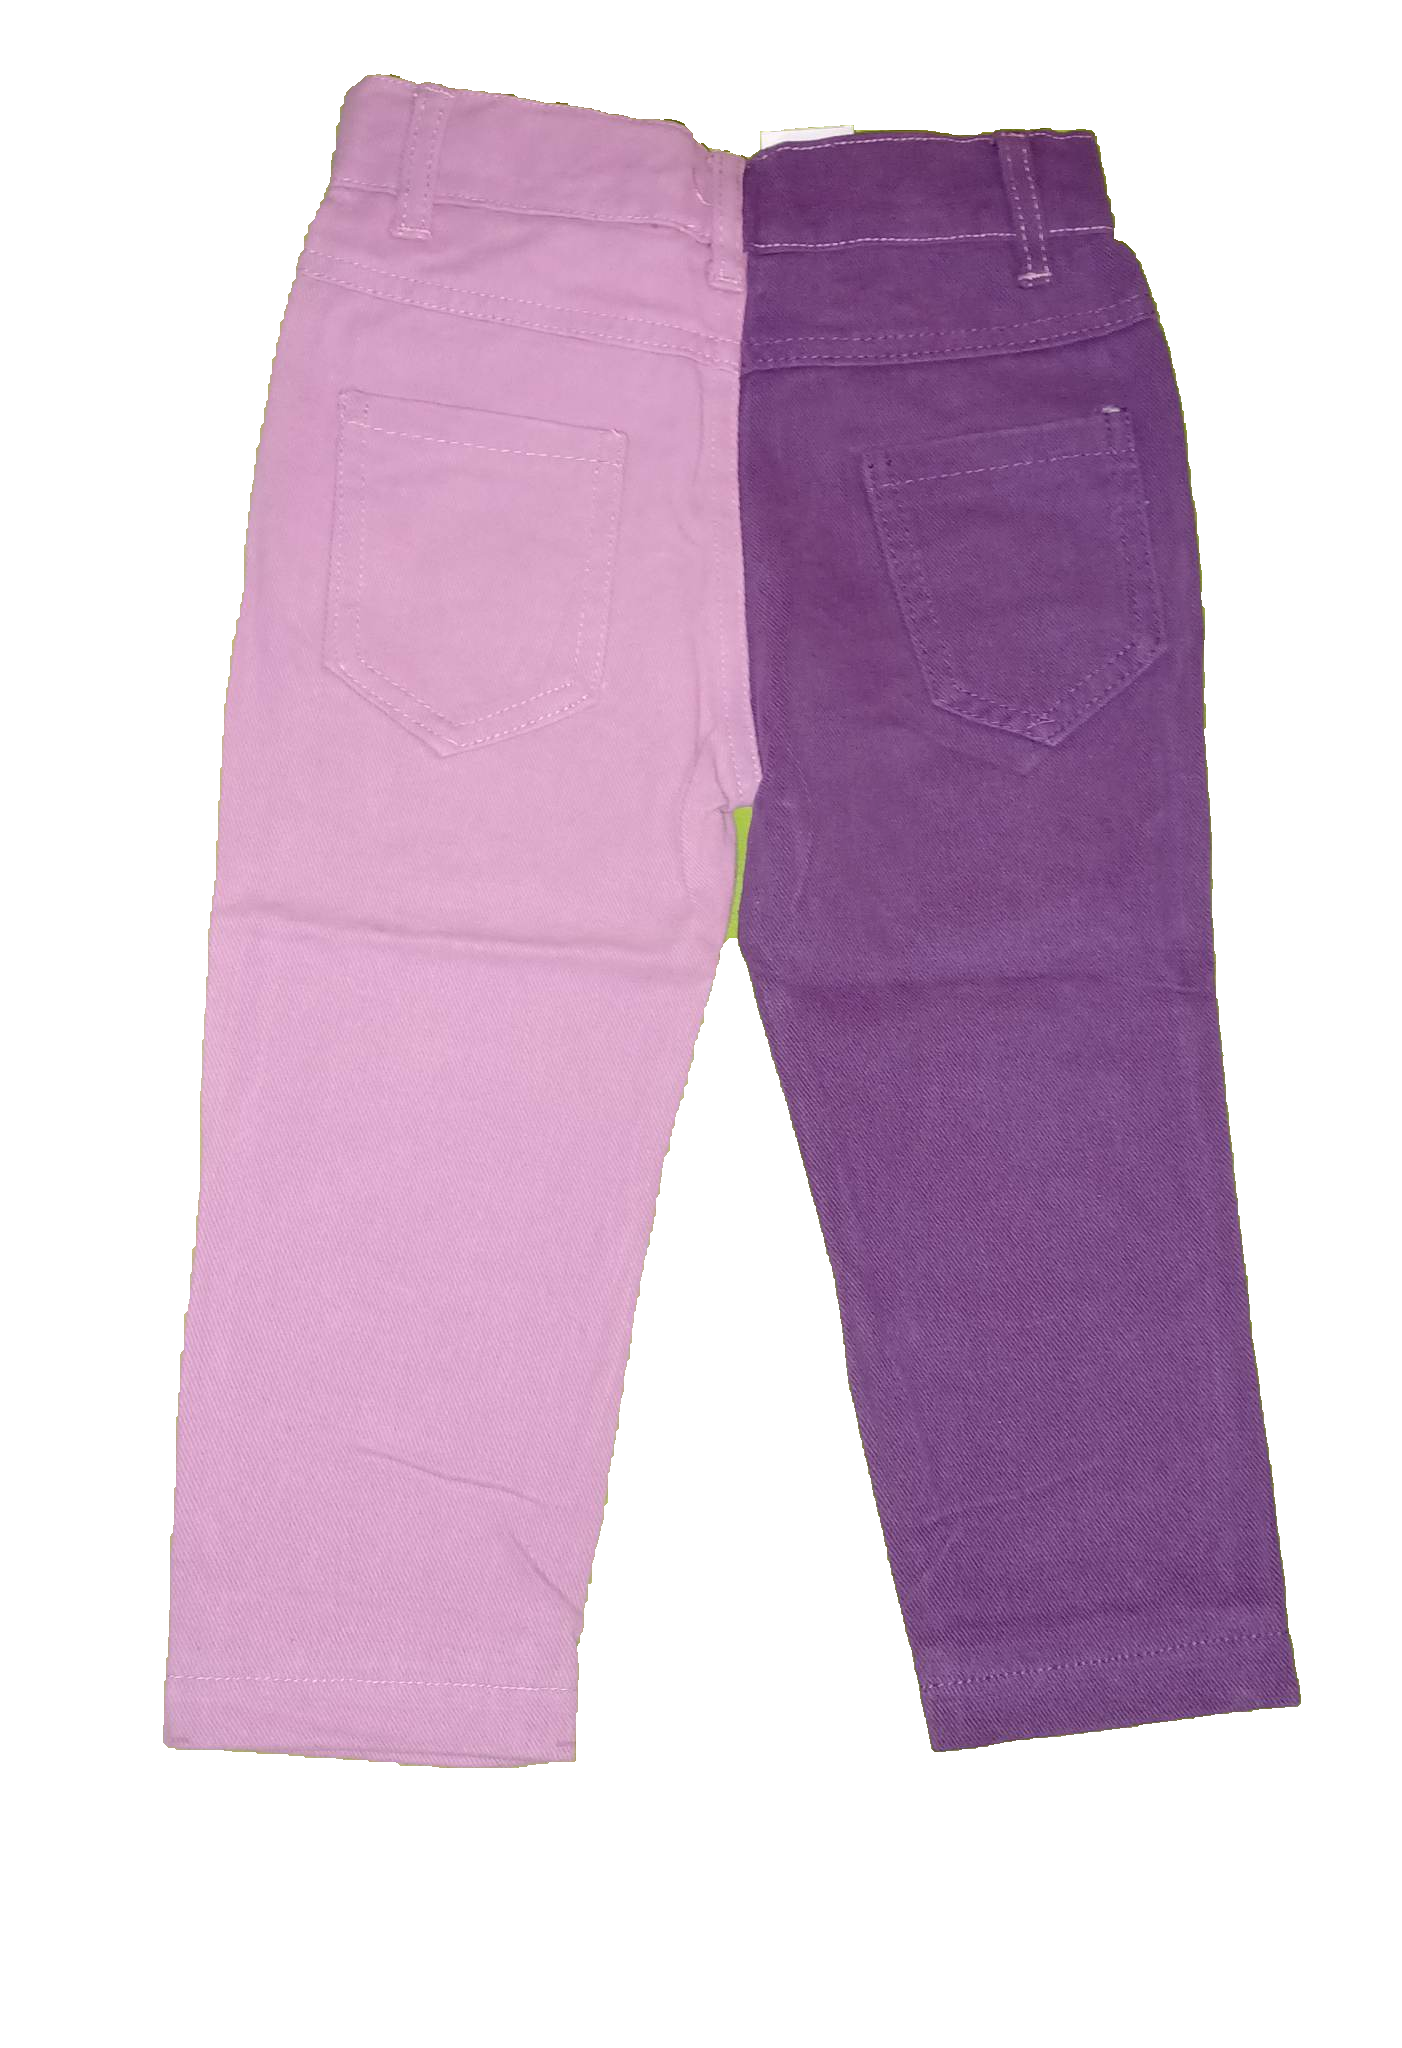 Pink Tie Dye Top & Pink Purple Spliced Jeans